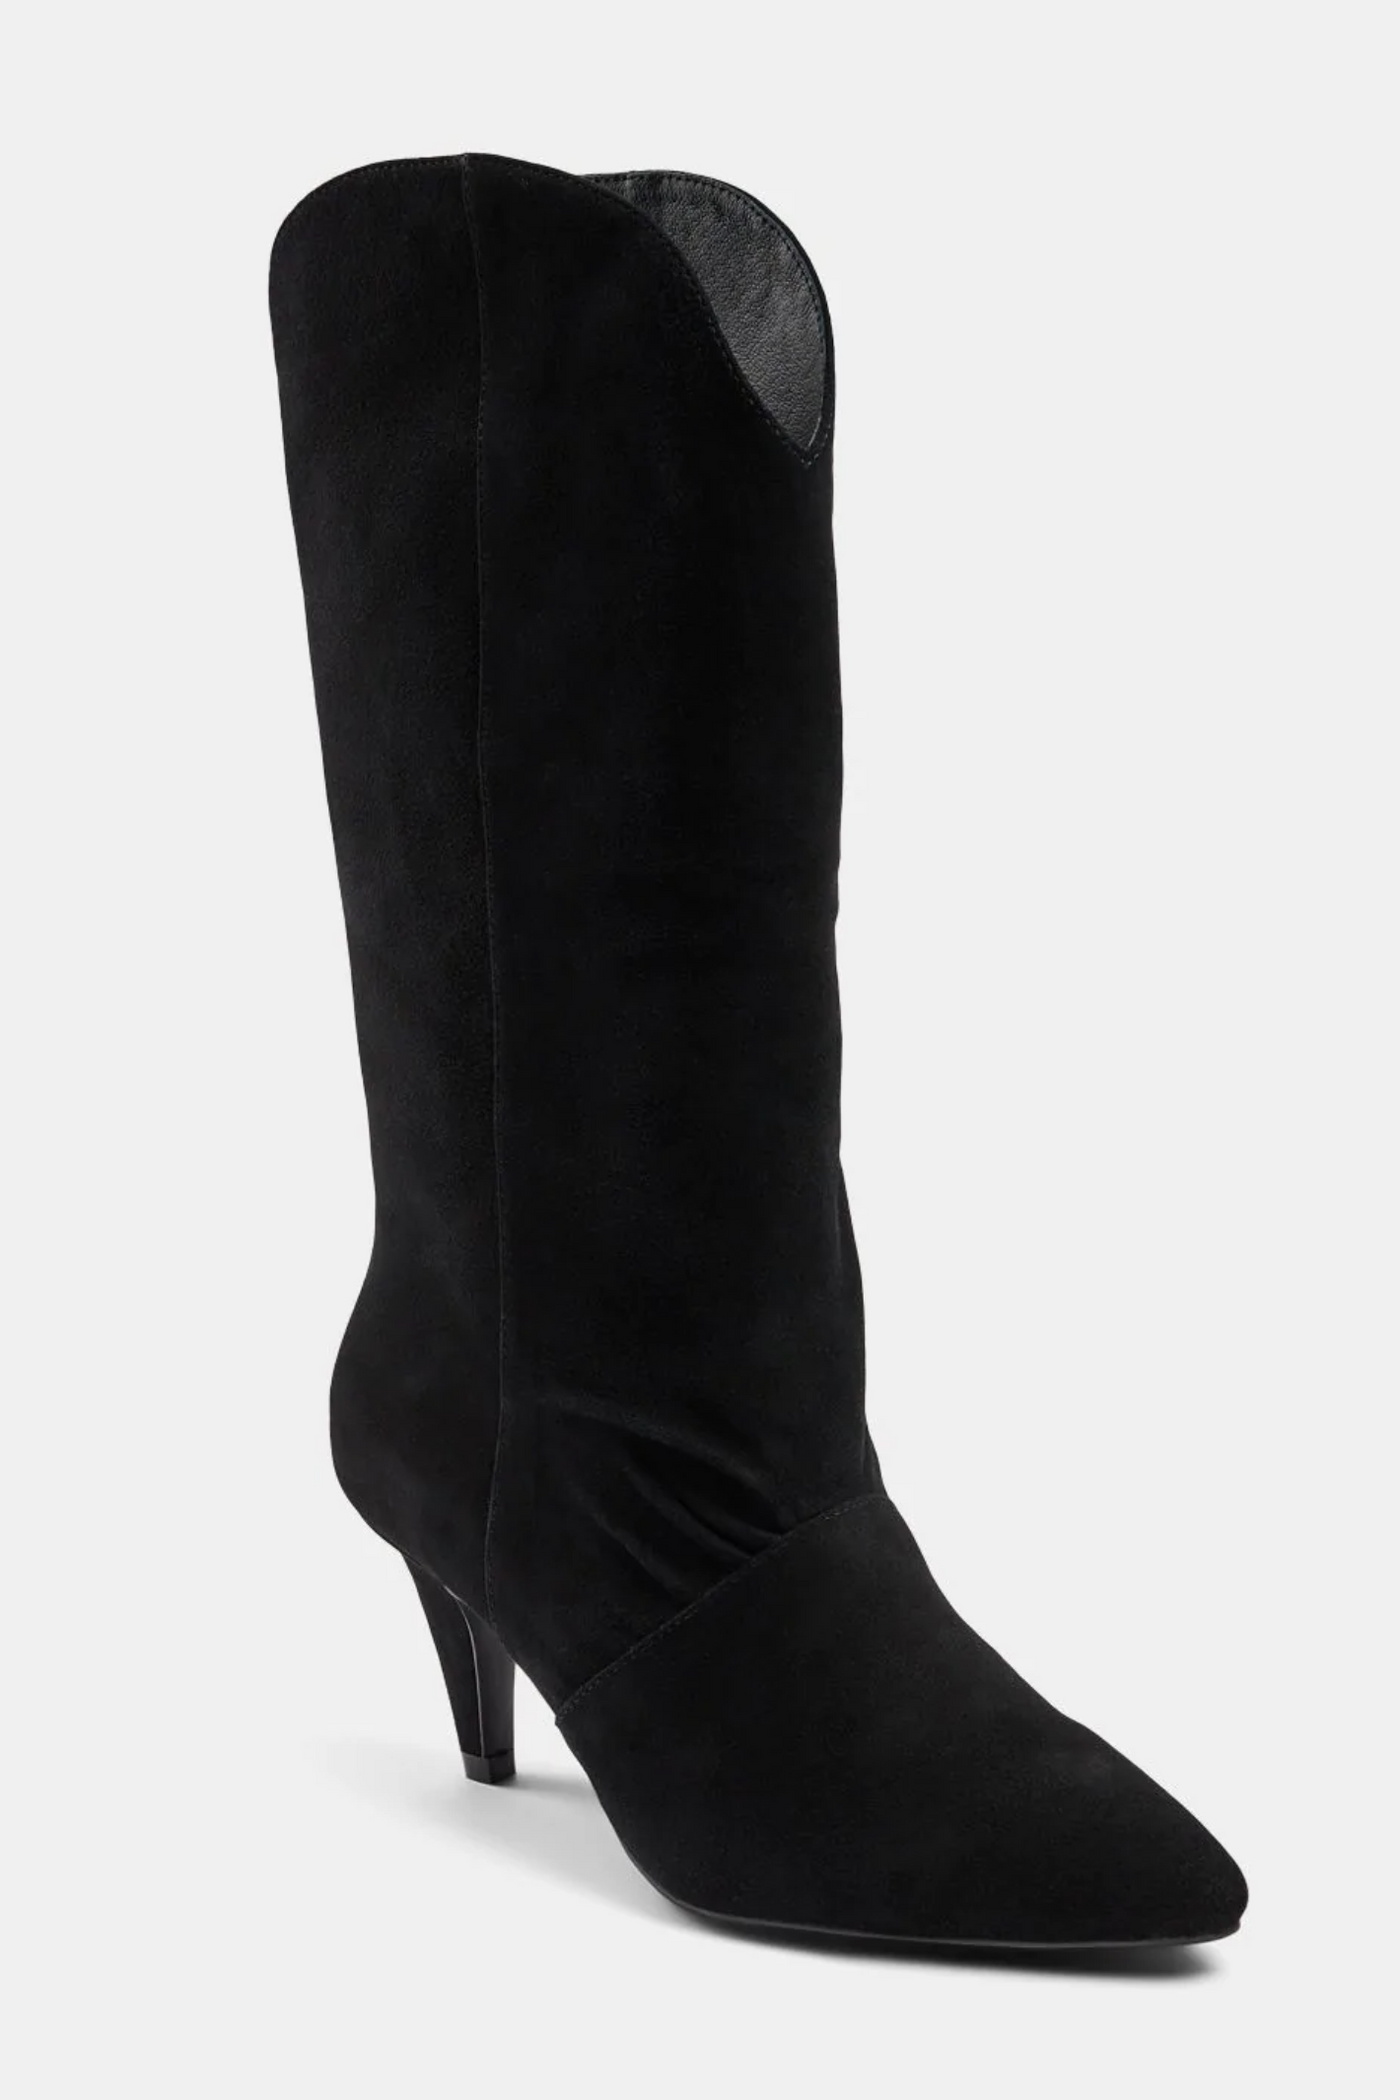 Sofie Schnoor Black Suede Boots | Jezabel Boutique